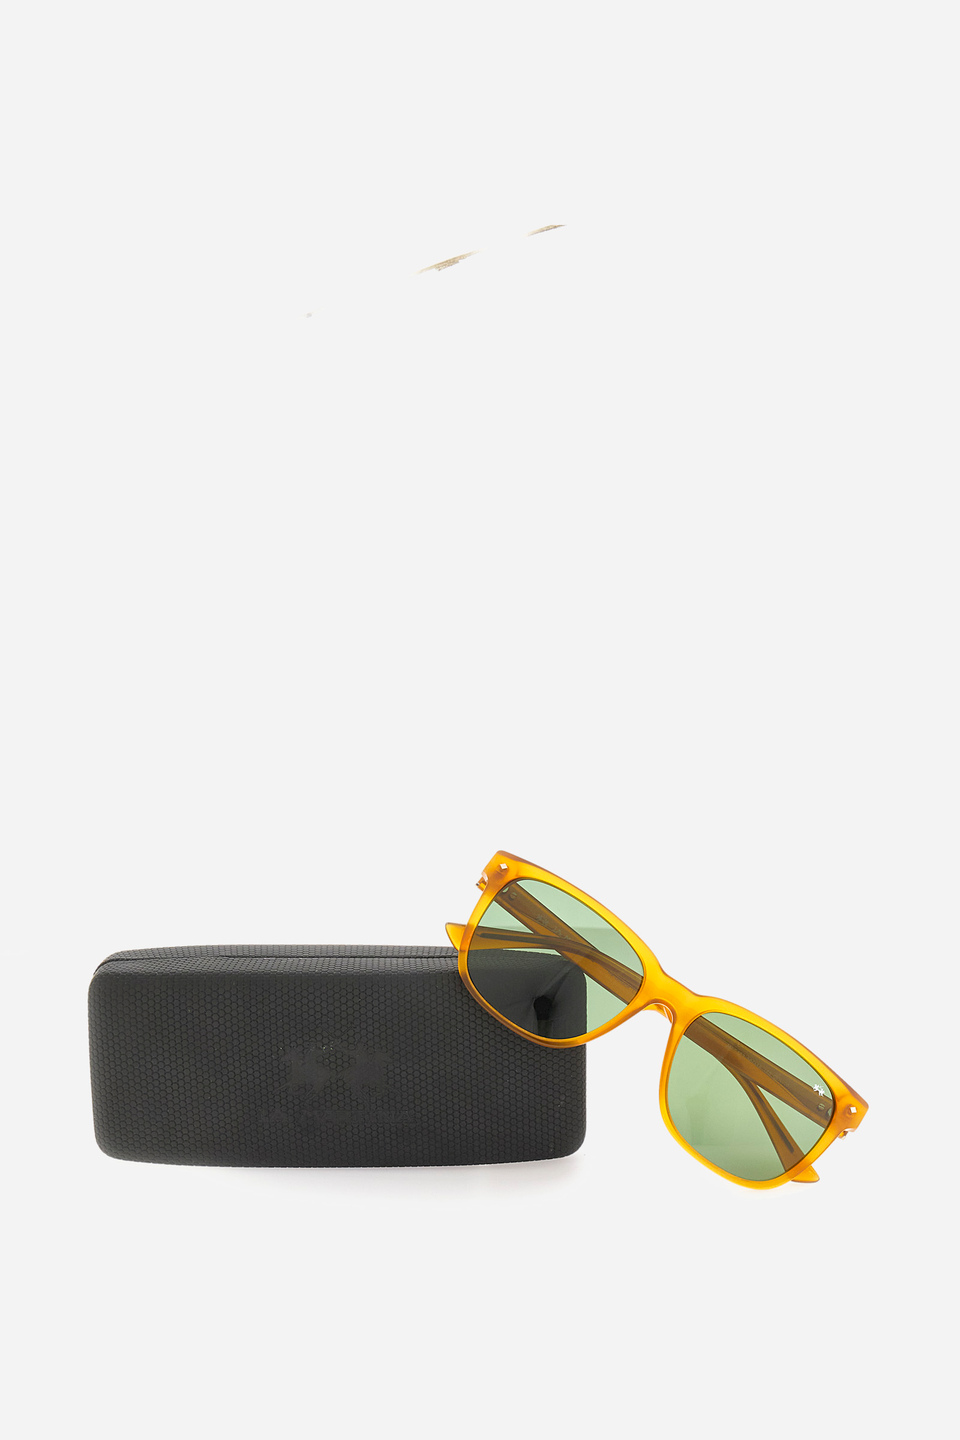 Gafas de sol de hombre modelo cuadrado | La Martina - Official Online Shop